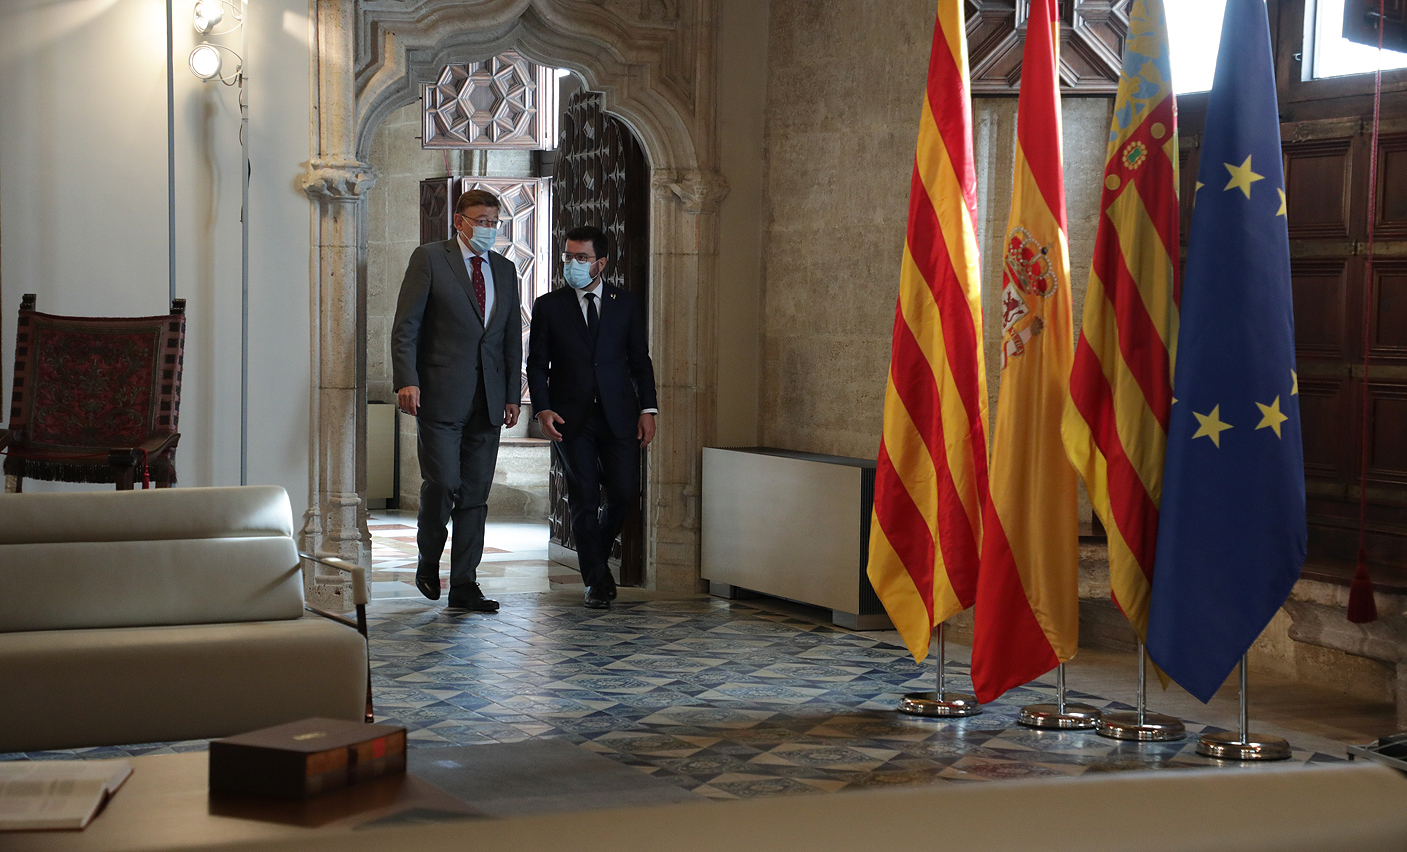 Els governs valencià i català s'alien per a captar fons europeus destinats a la recuperació econòmica i social